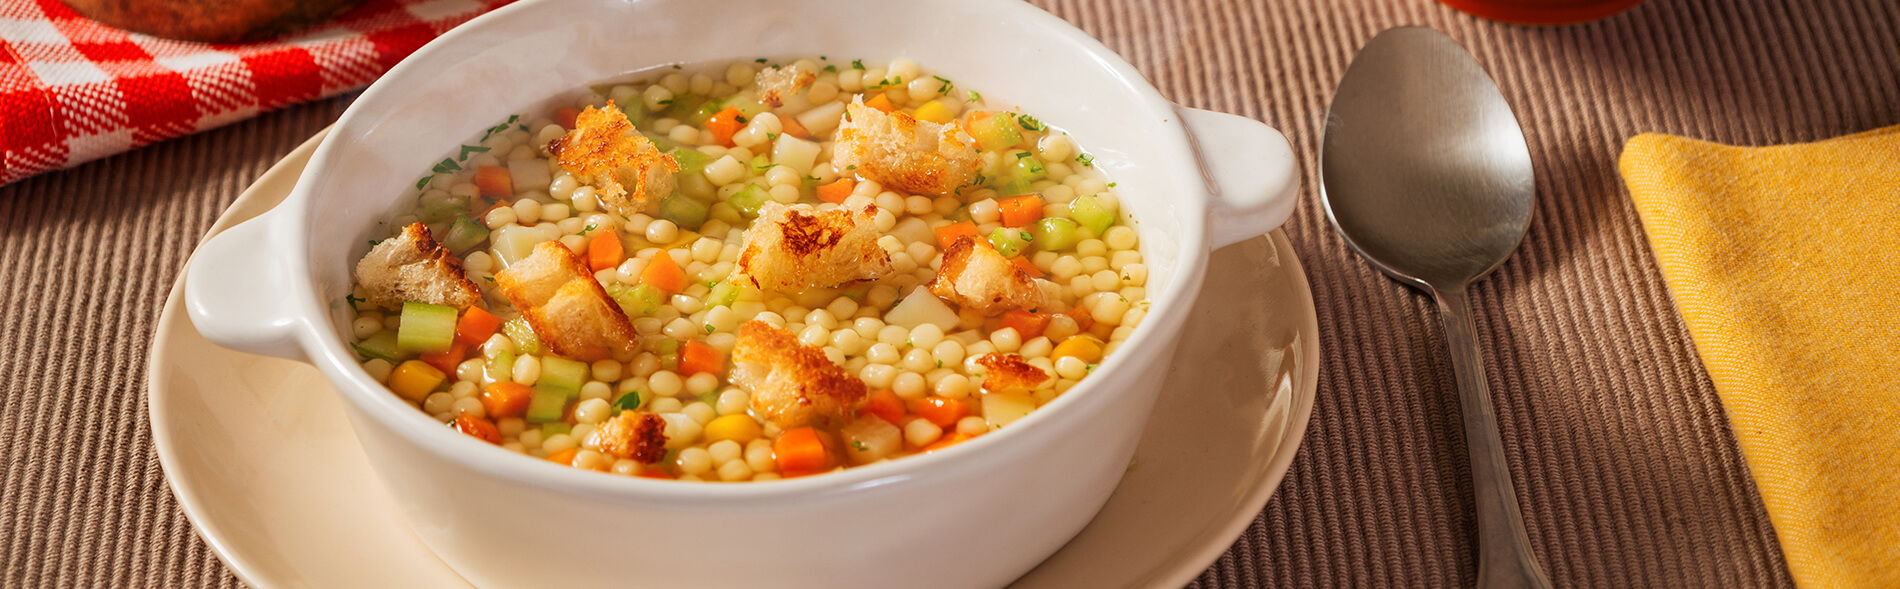 receta de sopa de verduras con granizo carozzi